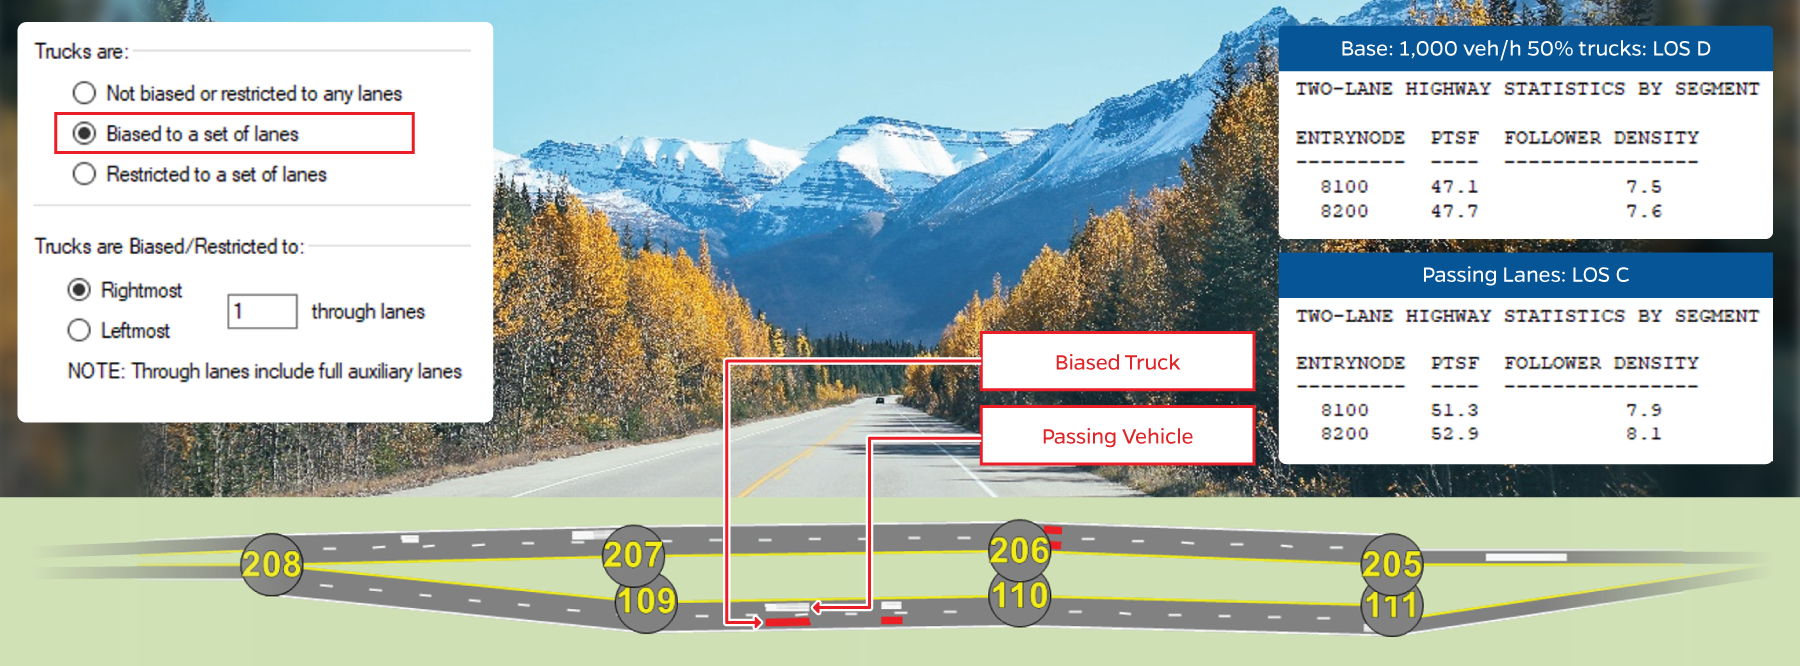 双车道公路的模拟与卡车行为